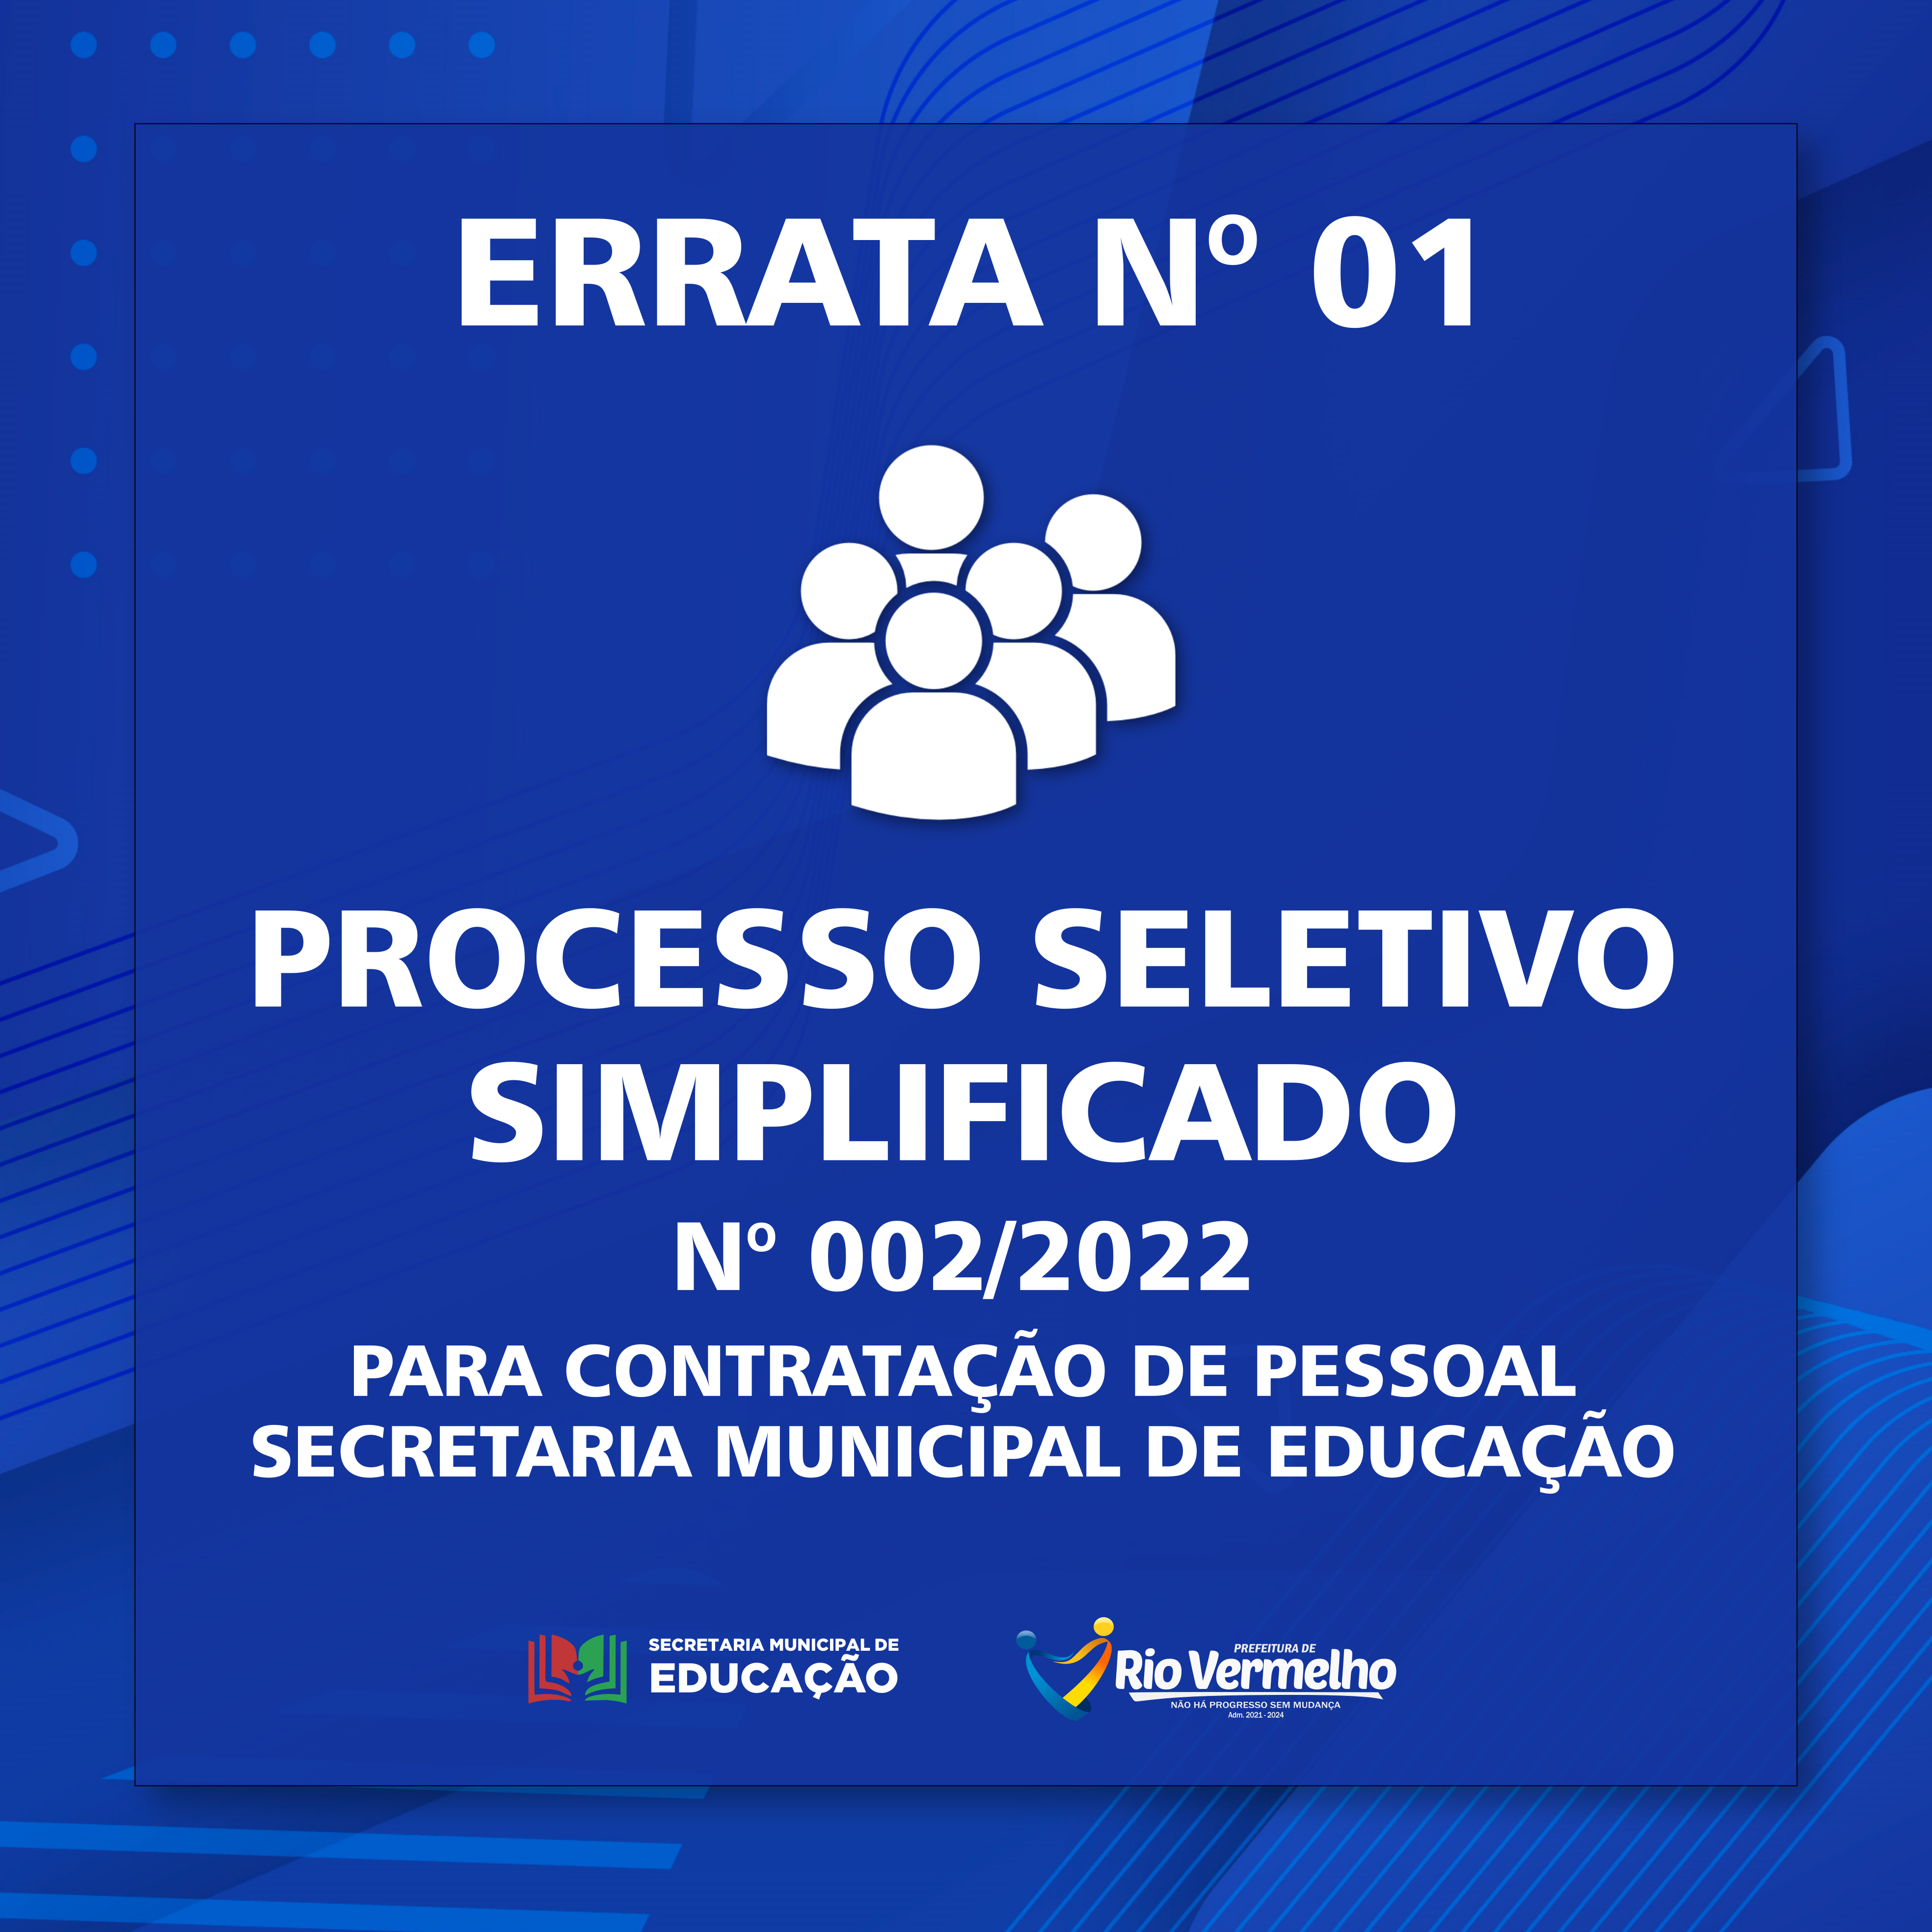 You are currently viewing ERRATA Nº 01 DO EDITAL DE PROCESSO SELETIVO SIMPLIFICADO Nº 002/2022 – SECRETARIA MUNICIPAL DE EDUCAÇÃO